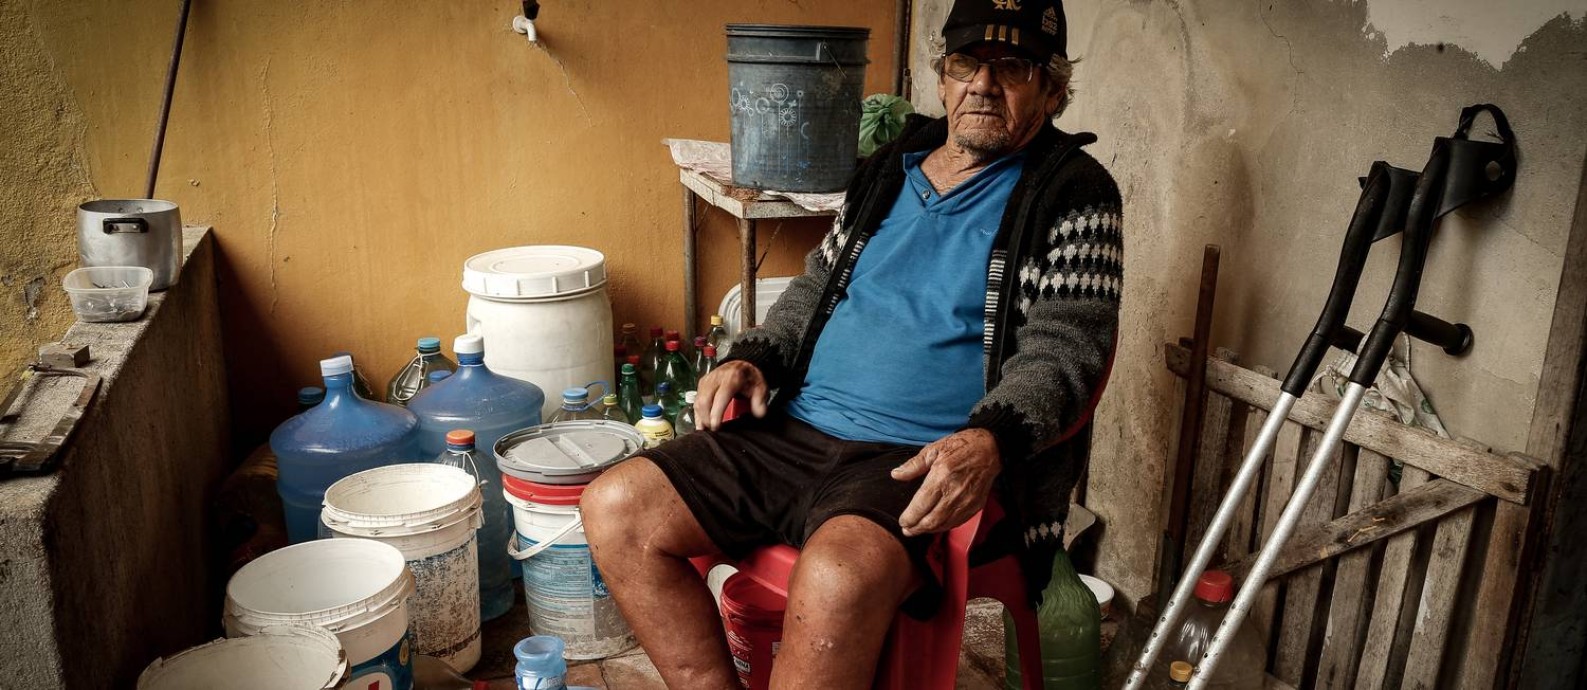 O ex-pescador Tellis Costa, de 83 anos Foto: Roberto Moreyra / Agência O Globo